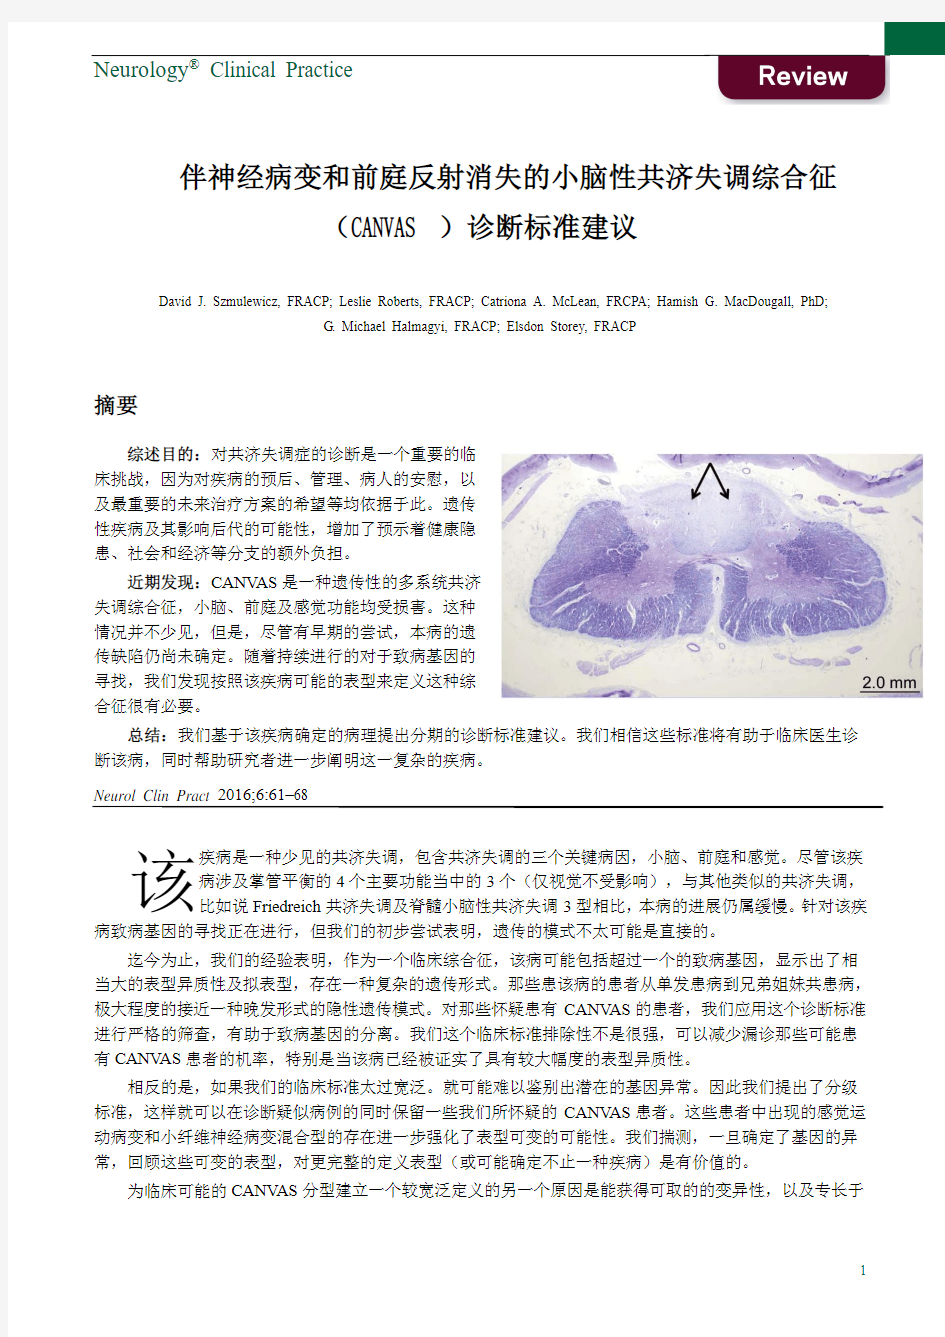 伴神经病变和前庭反射消失的小脑性共济失调综合征(CANVAS)诊断标准建议(中文翻译版)